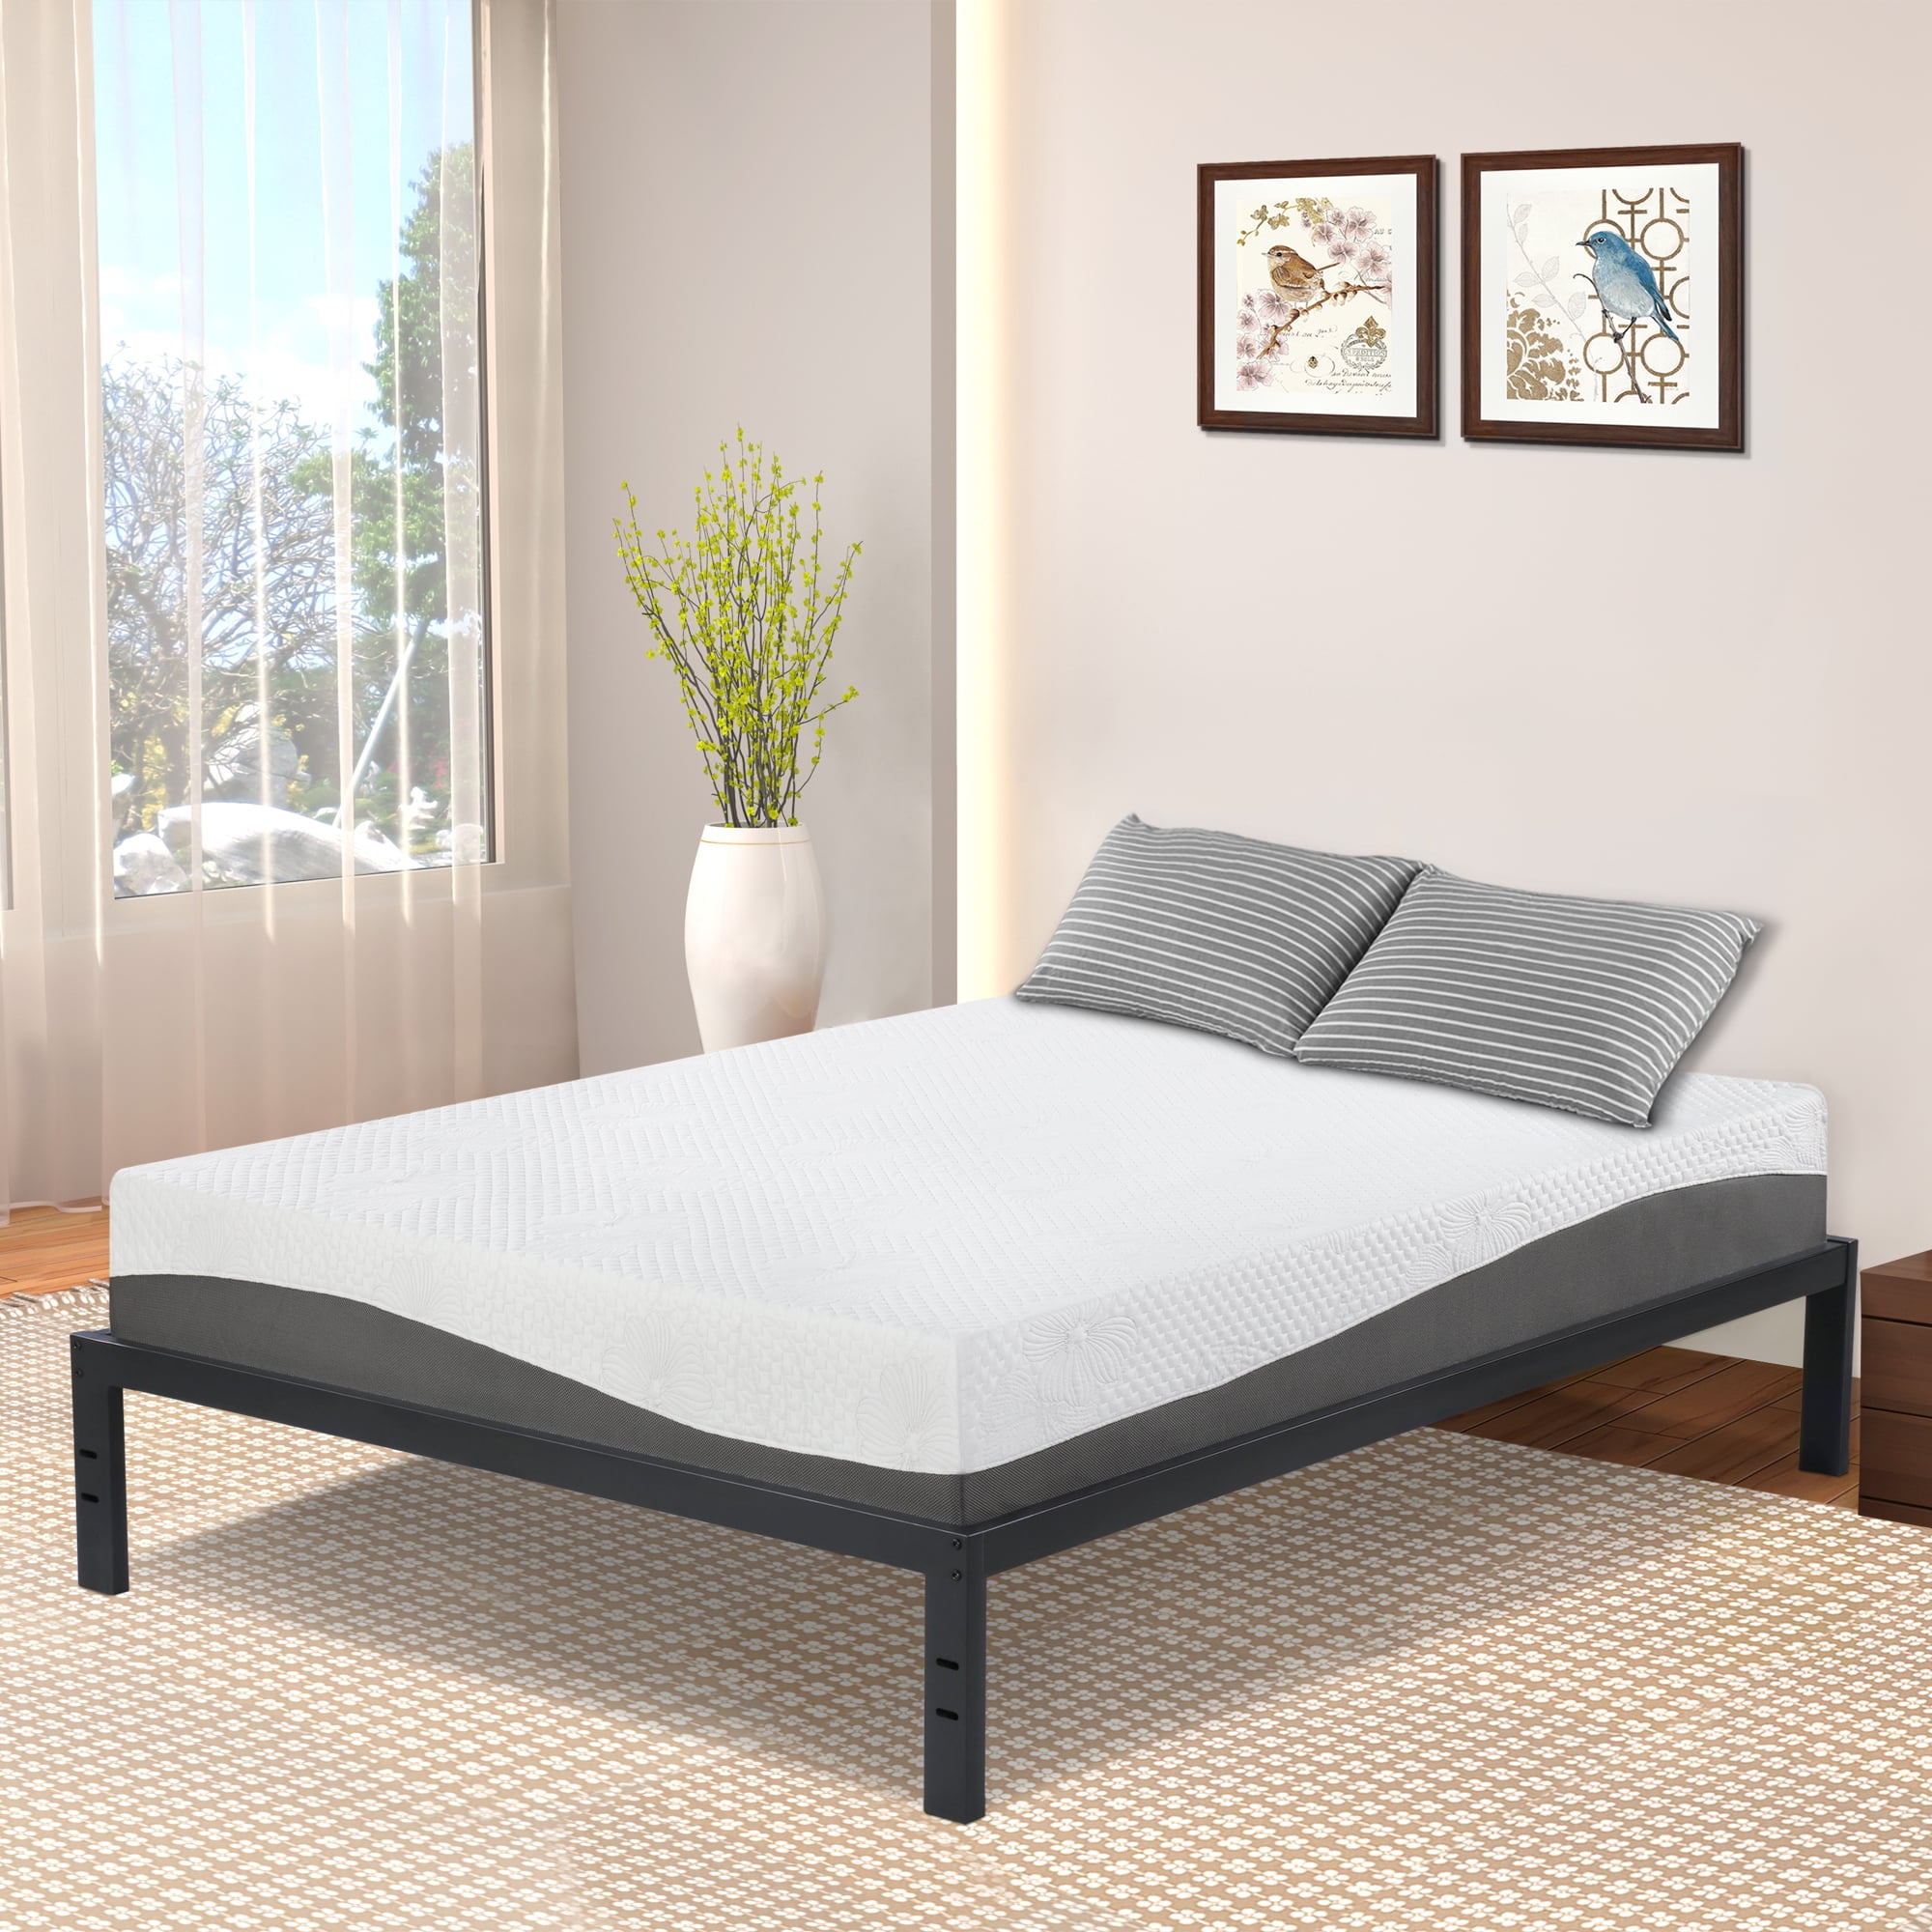 Granrest 14 Modern Dura Steel Slat Bed, Granrest 18 Dura Metal Bed Frame